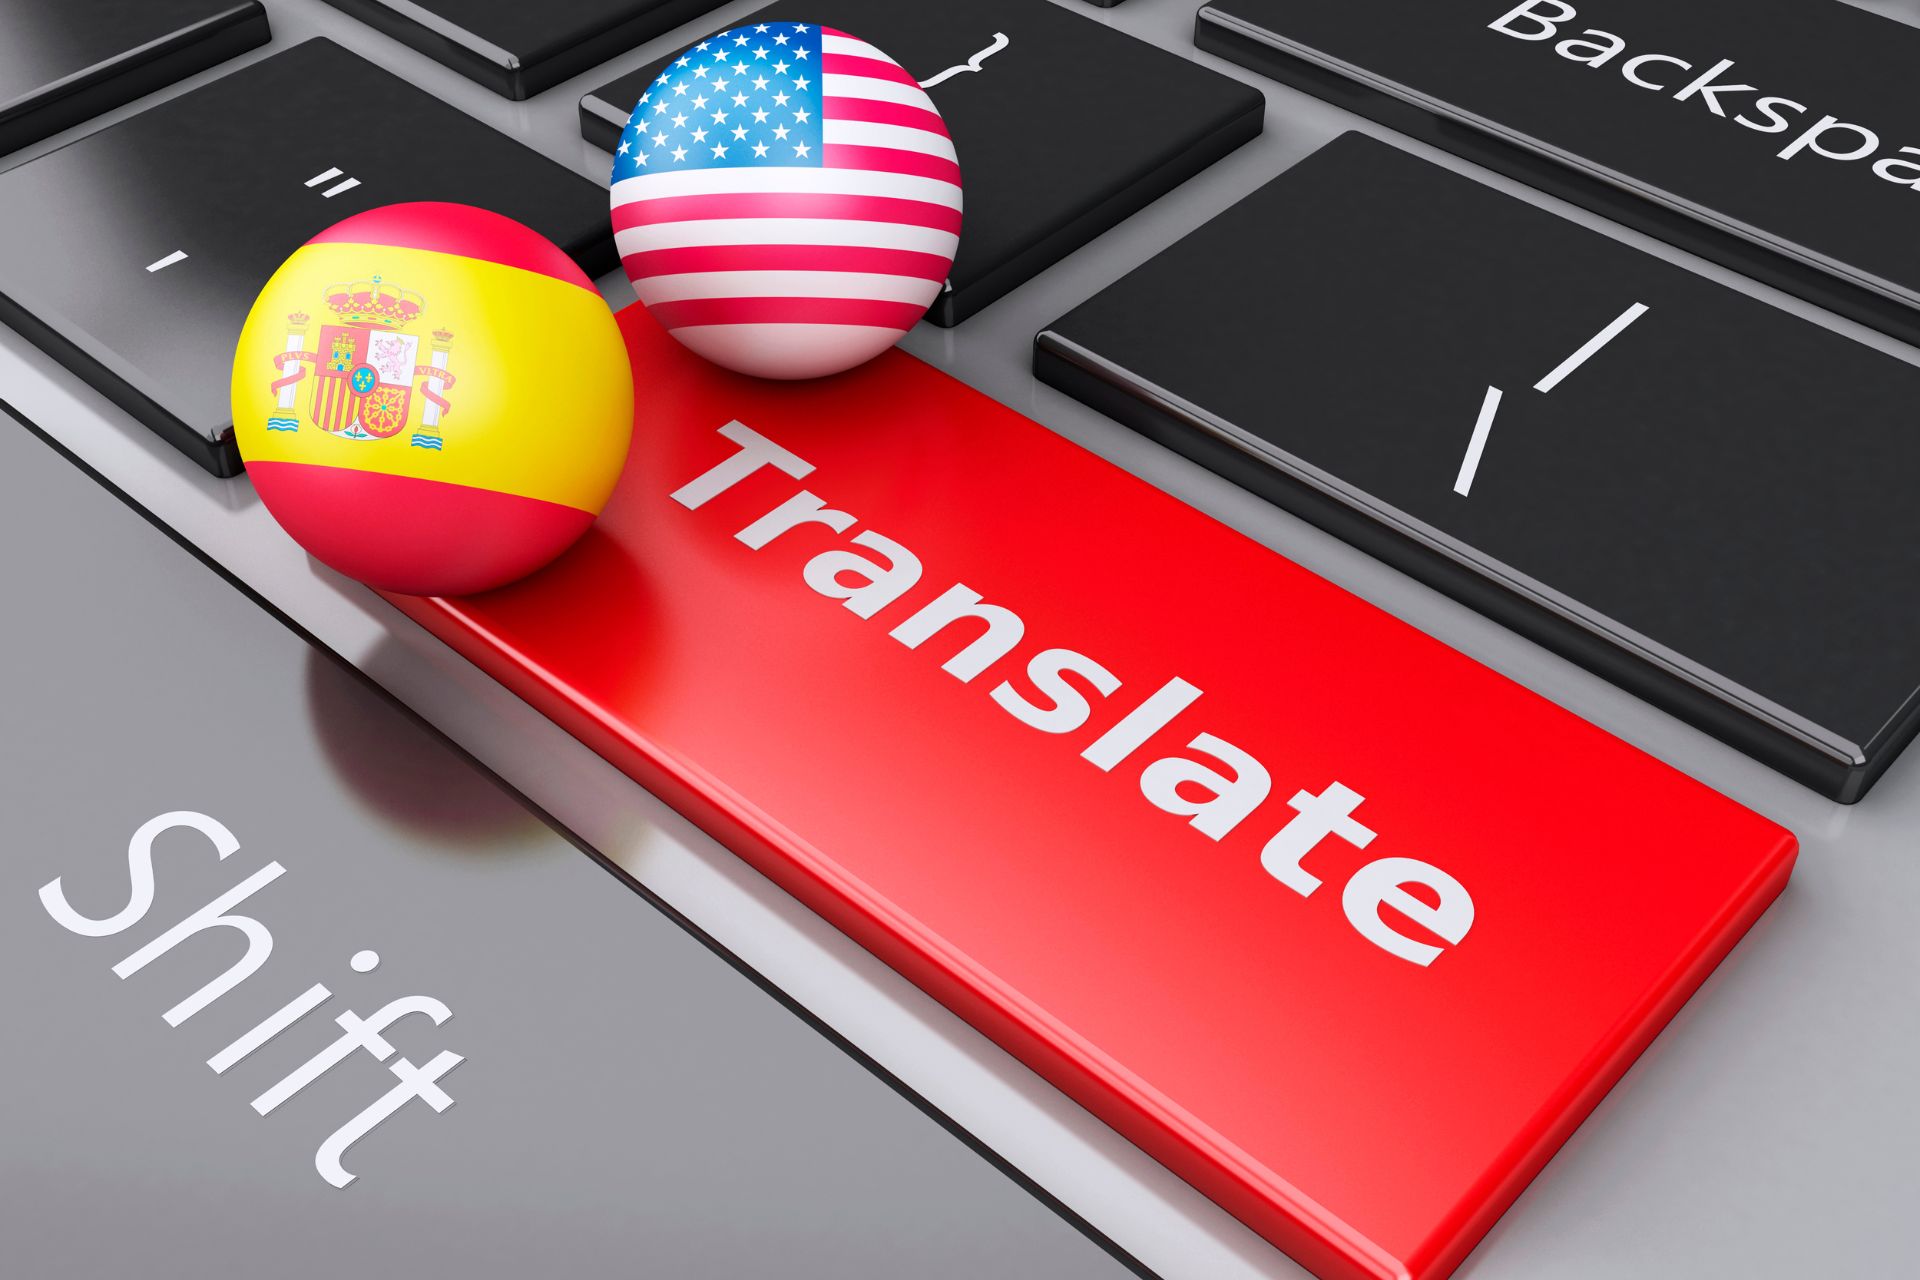  Kiedy potrzebne jest tłumaczenie przysięgłe?